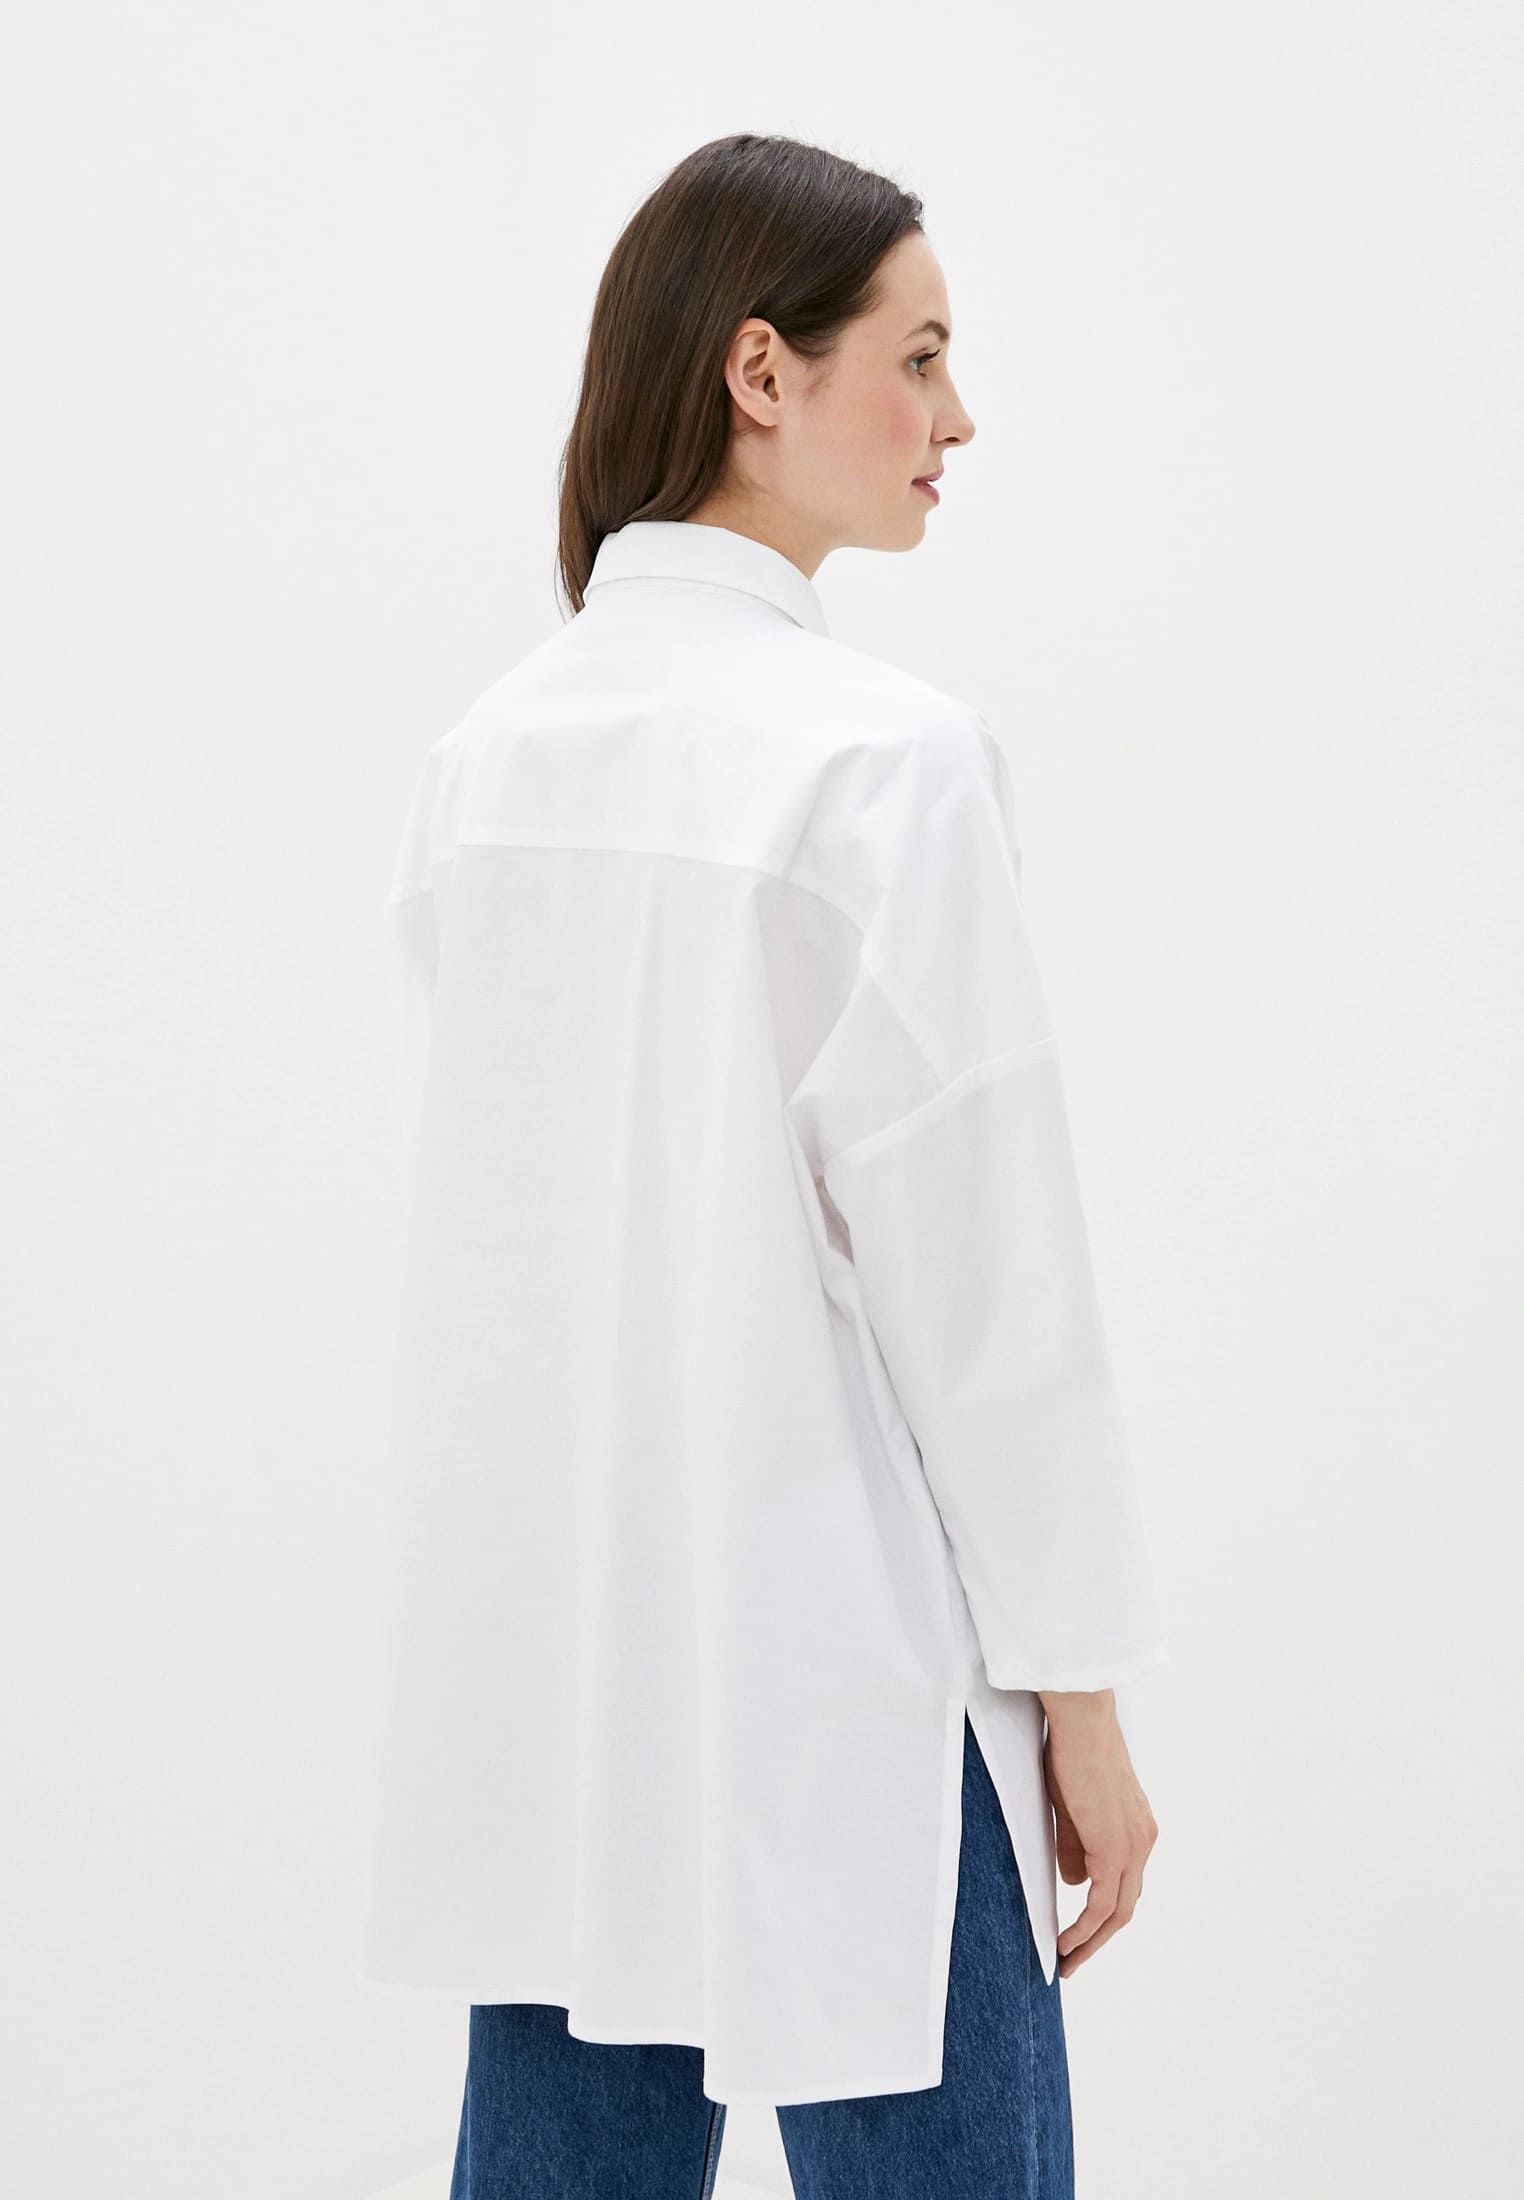 Белая блуза BAUMIA с накладными карманами. Изображение 3